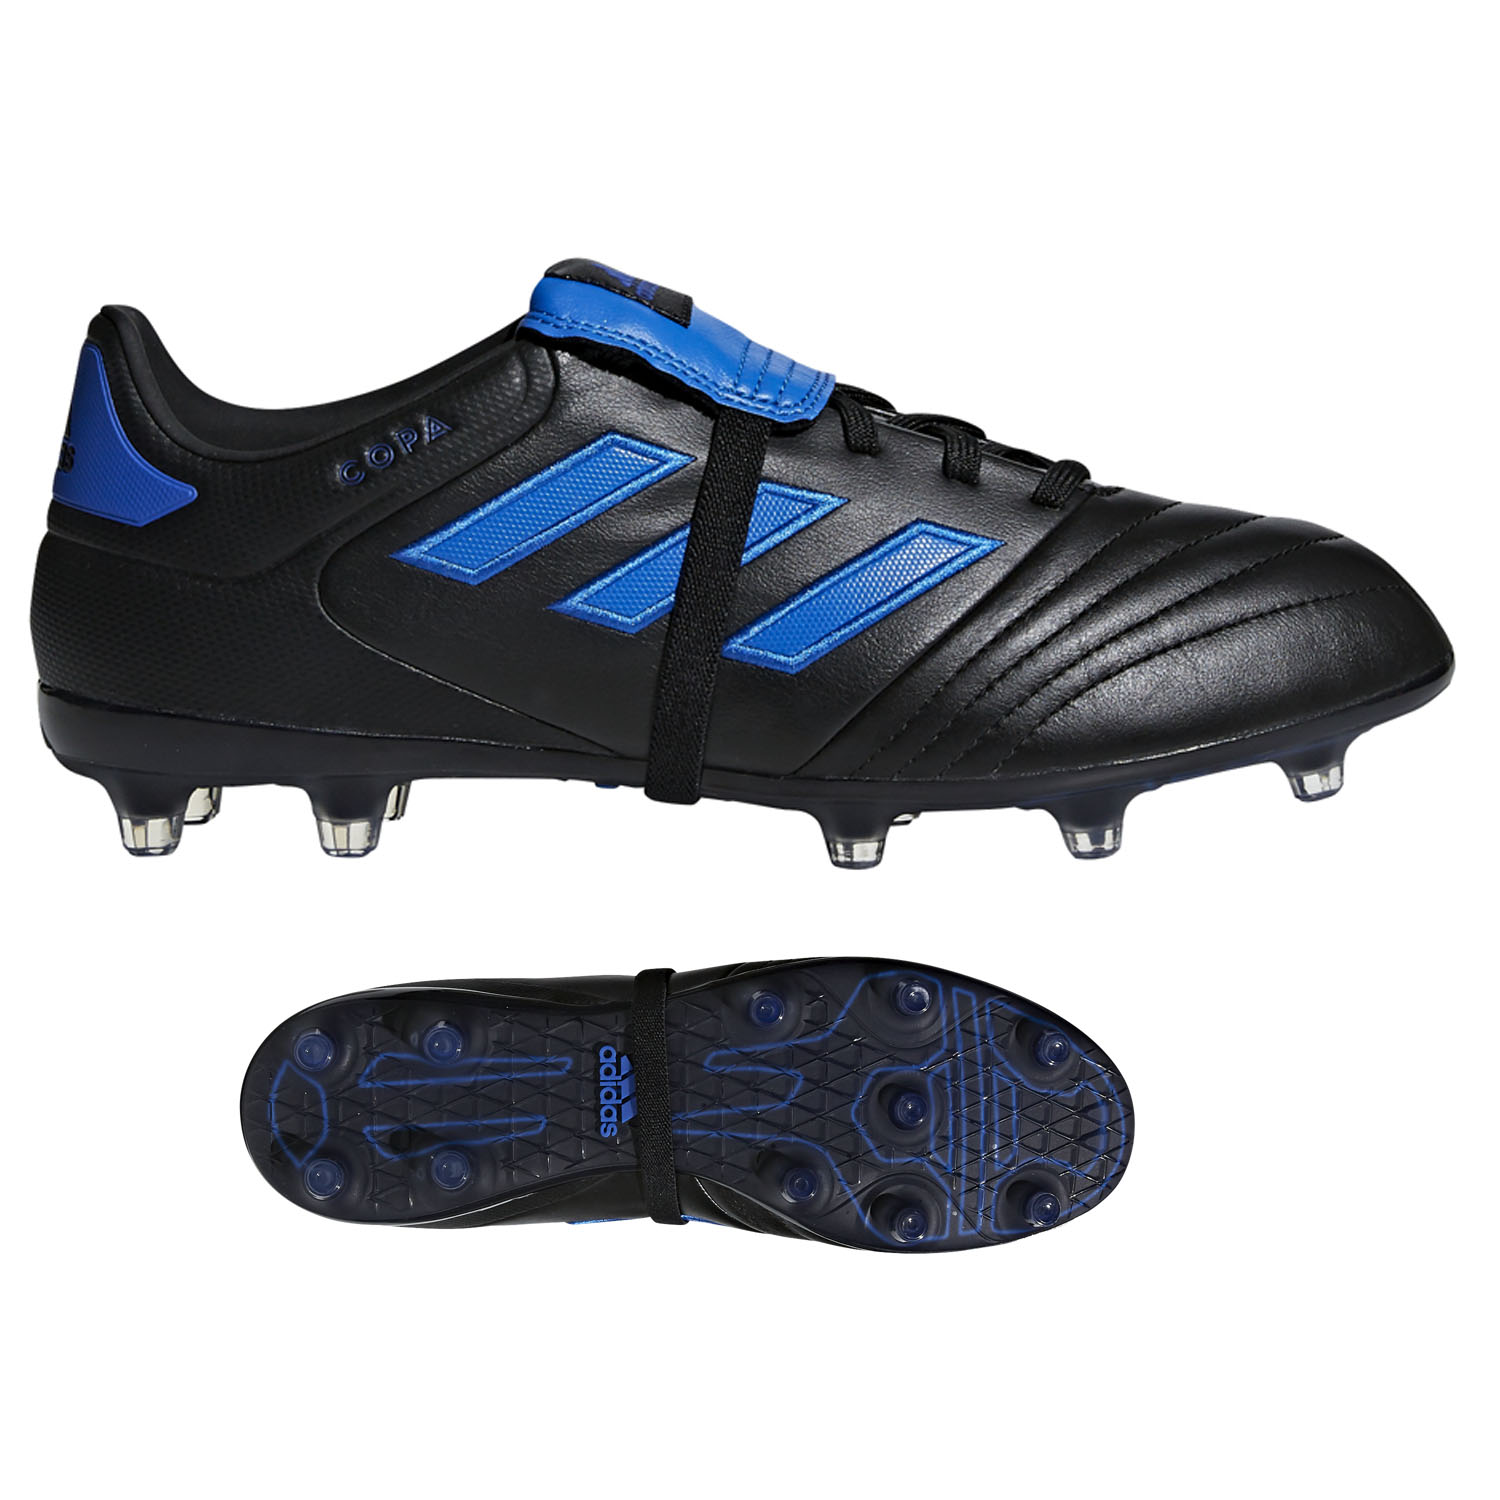 Copa Gloro 17.2 FG Soccer Shoes (Core Blue) @ SoccerEvolution